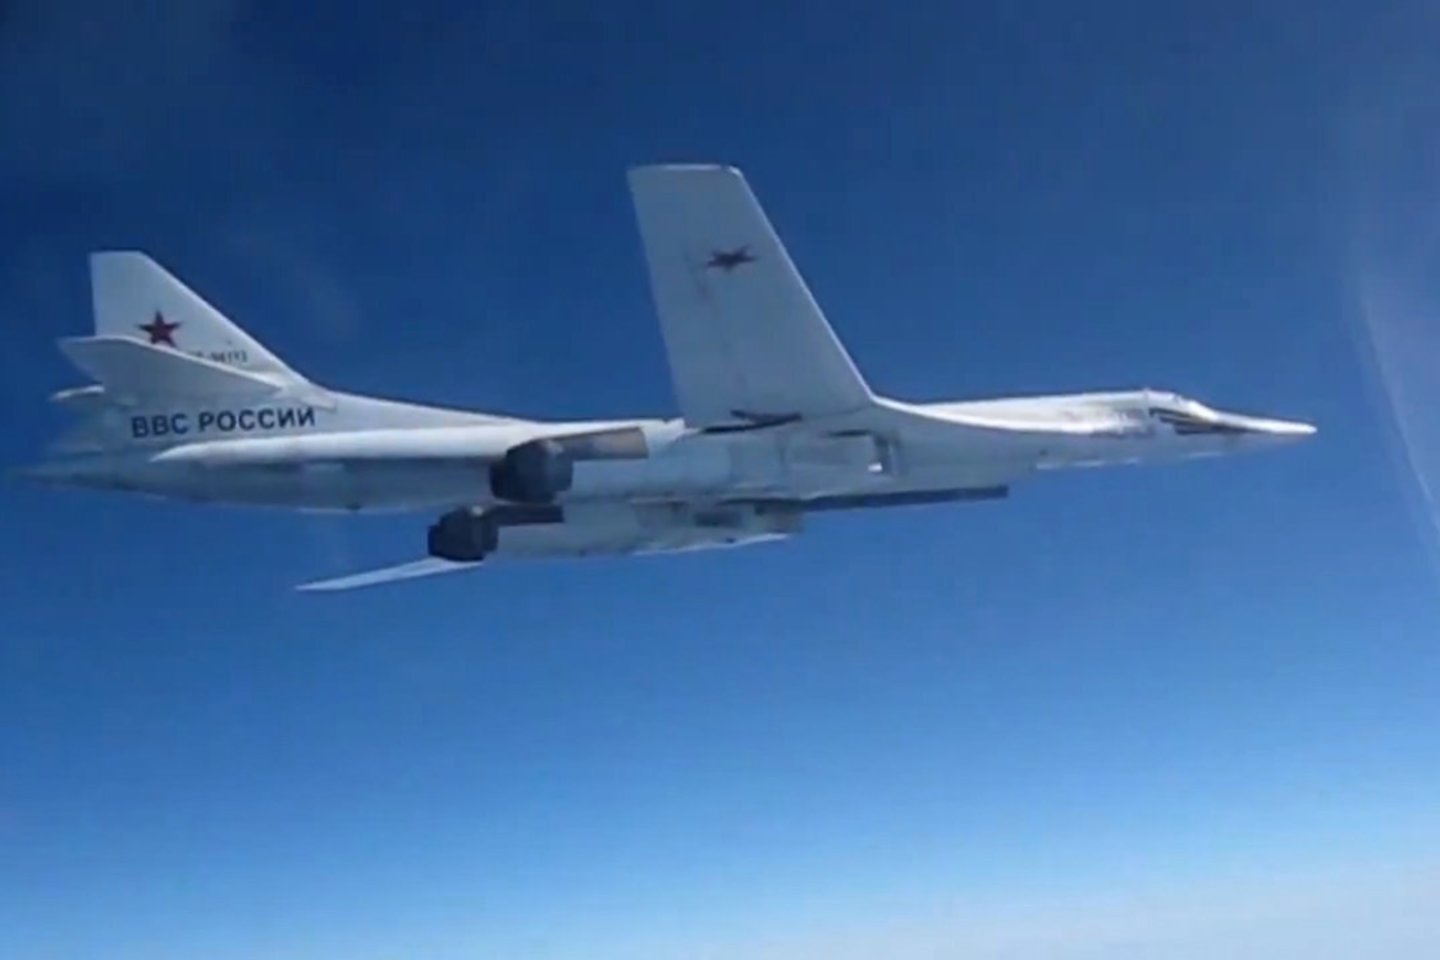  Pasak naujienų agentūros „Sputnik“, lapkričio 3 d. viršgarsinis Rusijos bombonešis Tu-160” vykdė eilinį mokomąjį skrydį - ir čia jį, pasak pranešimų, perėmė du JAV gamybos naikintuvai F-35A.<br> Scanpix / Sputnik nuotr.